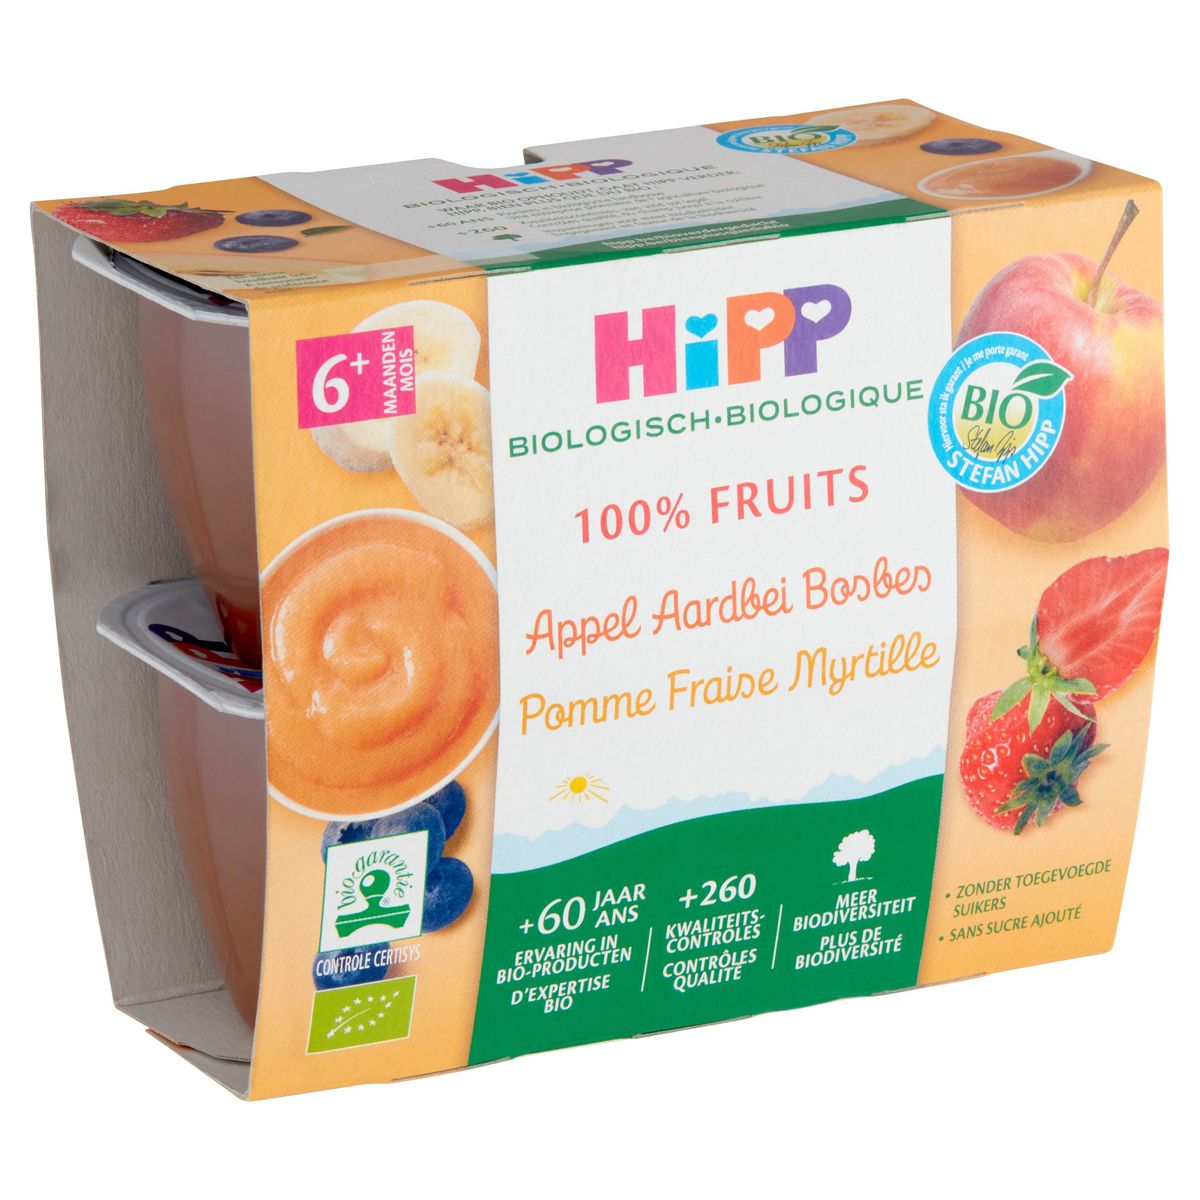 HiPP Biologisch 100% Fruits Appel Aardbei Bosbes 6+ Maanden 4 x 100 g